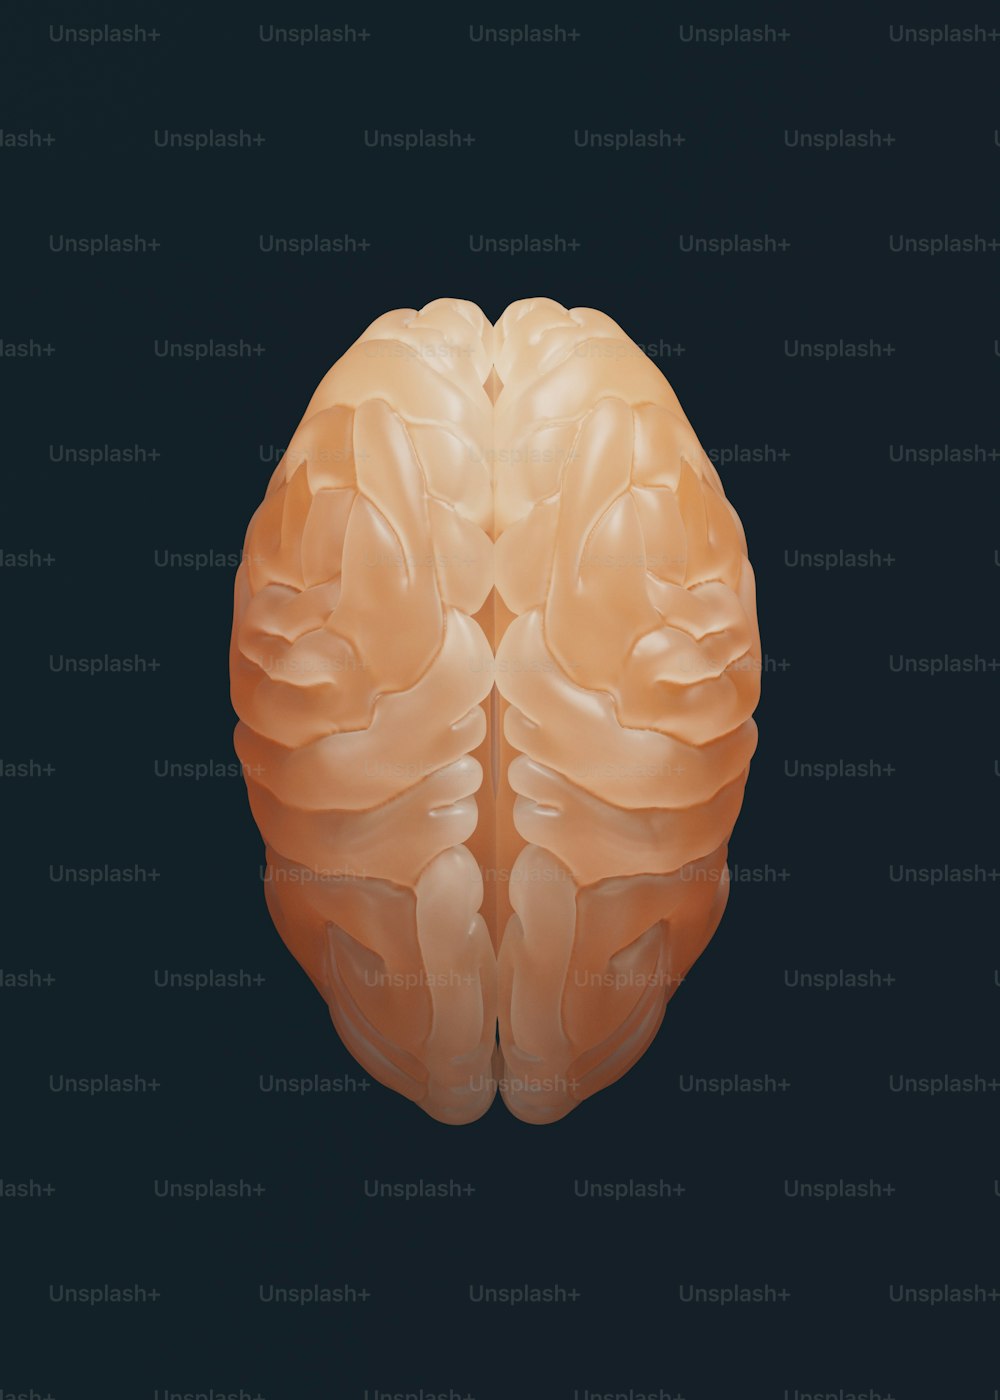 Un primo piano di un cervello umano su uno sfondo nero